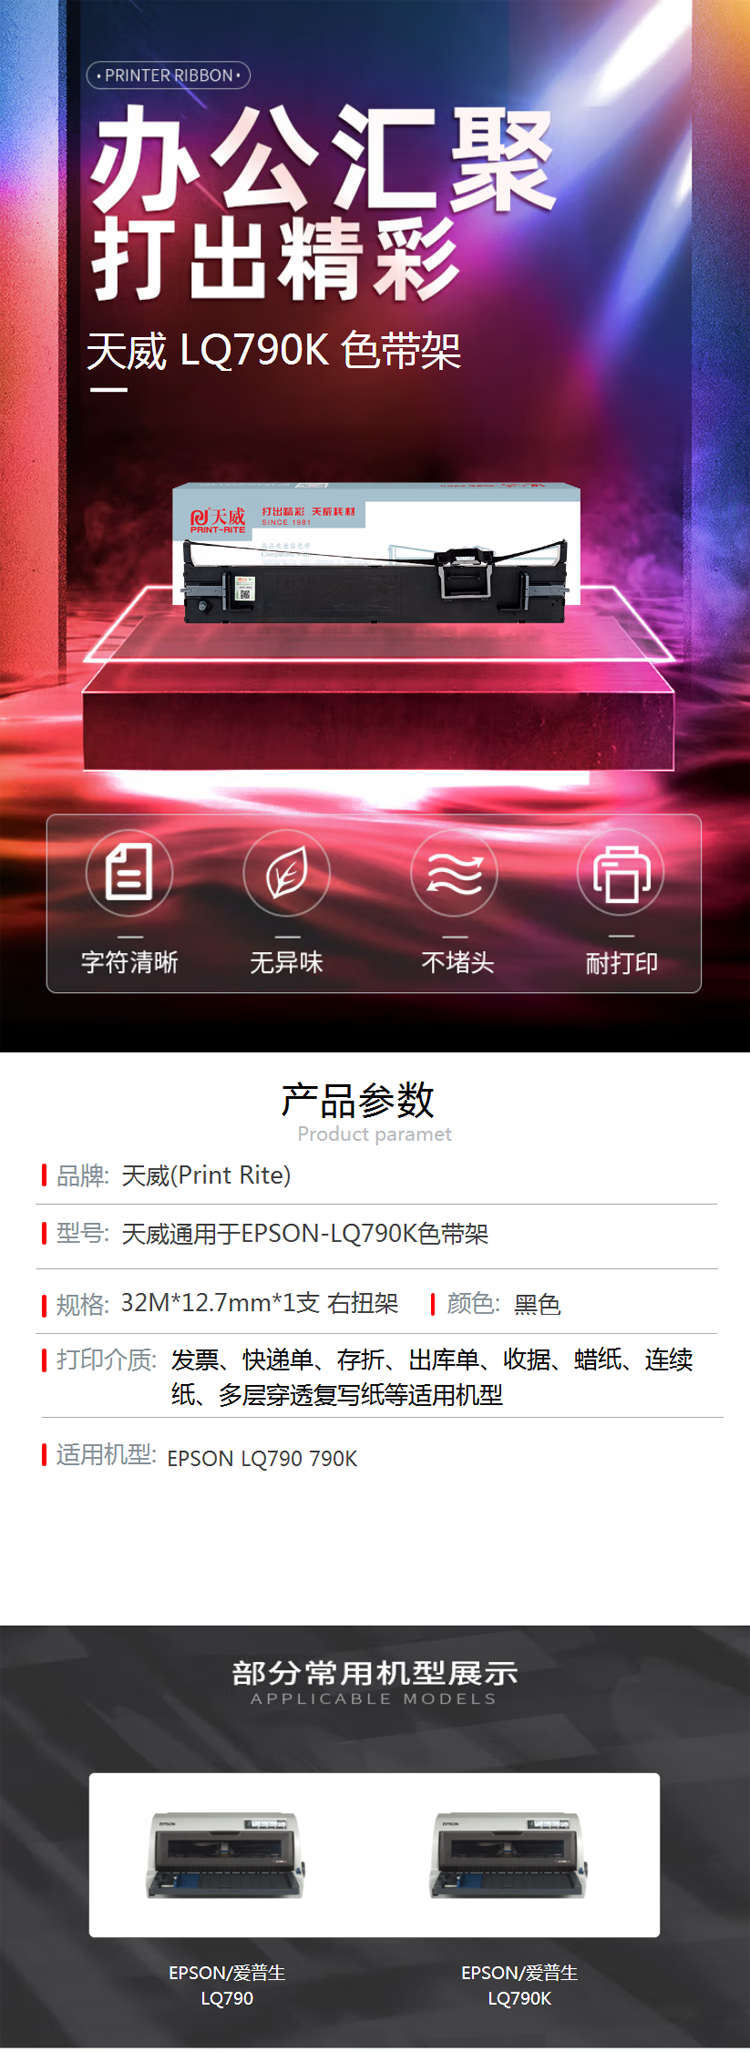 【天威LQ790K】天威 LQ790K色带 适用于爱普生EPSON LQ790 790K打印机 色带.png